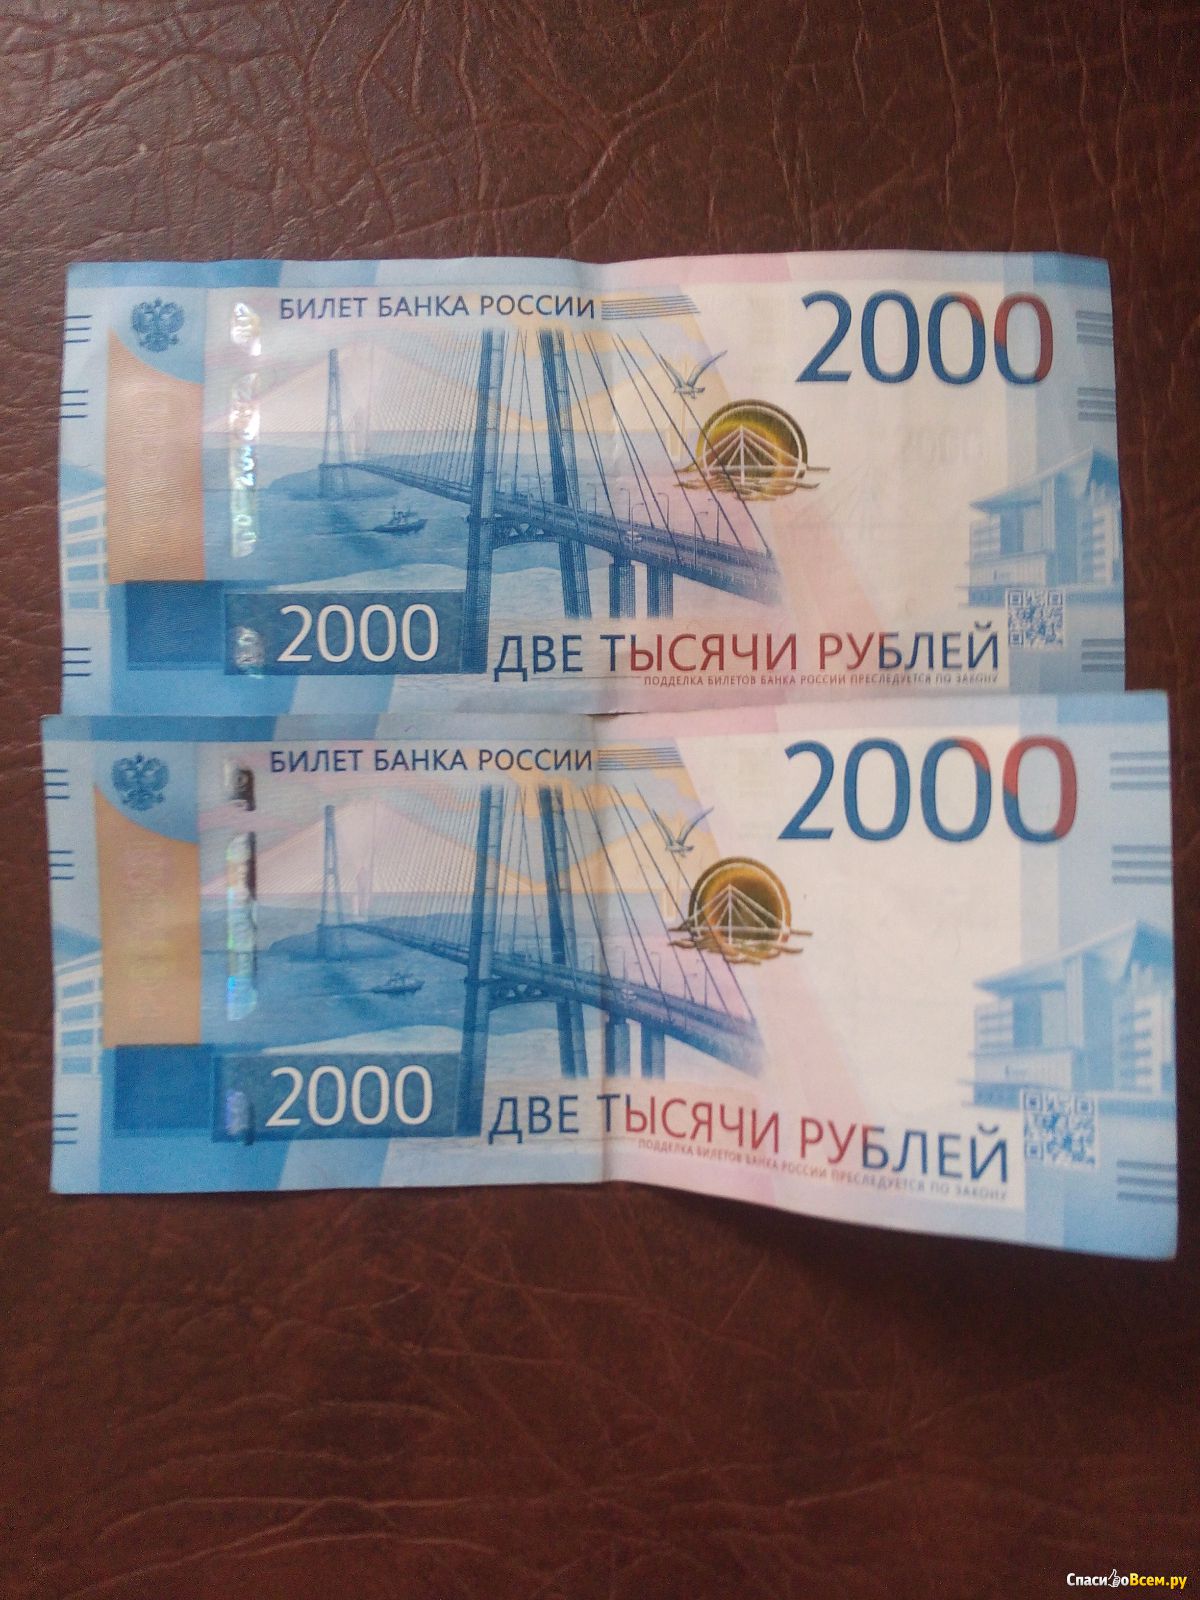 2000 рублей какого года. Купюра 2000. 2000 Рублей. Купюра 2000 рублей. Банкнота 2000 руб.